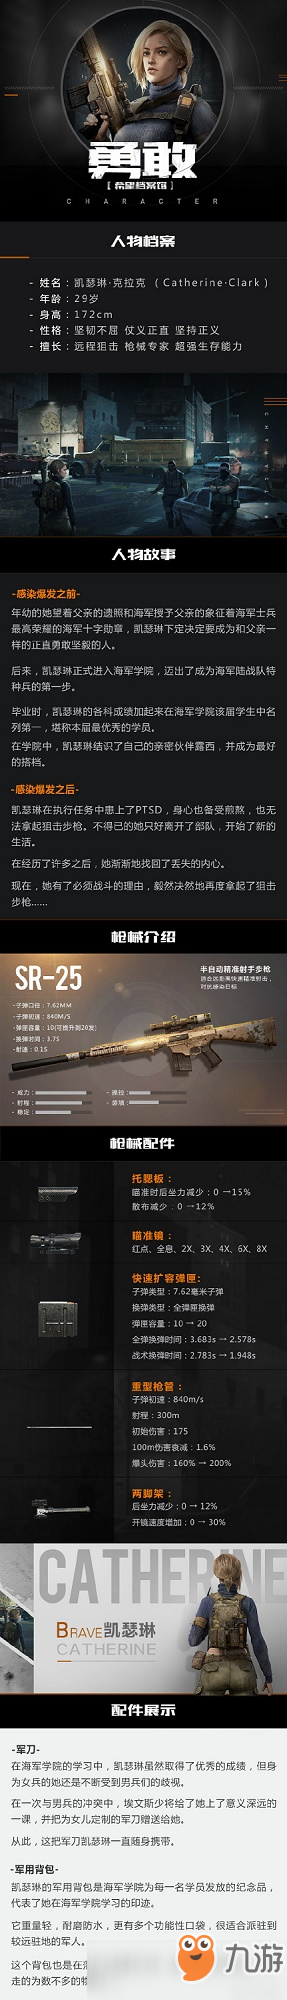 代号生机首支枪支SR-25爆料 代号生机凯新人物瑟琳克拉克介绍